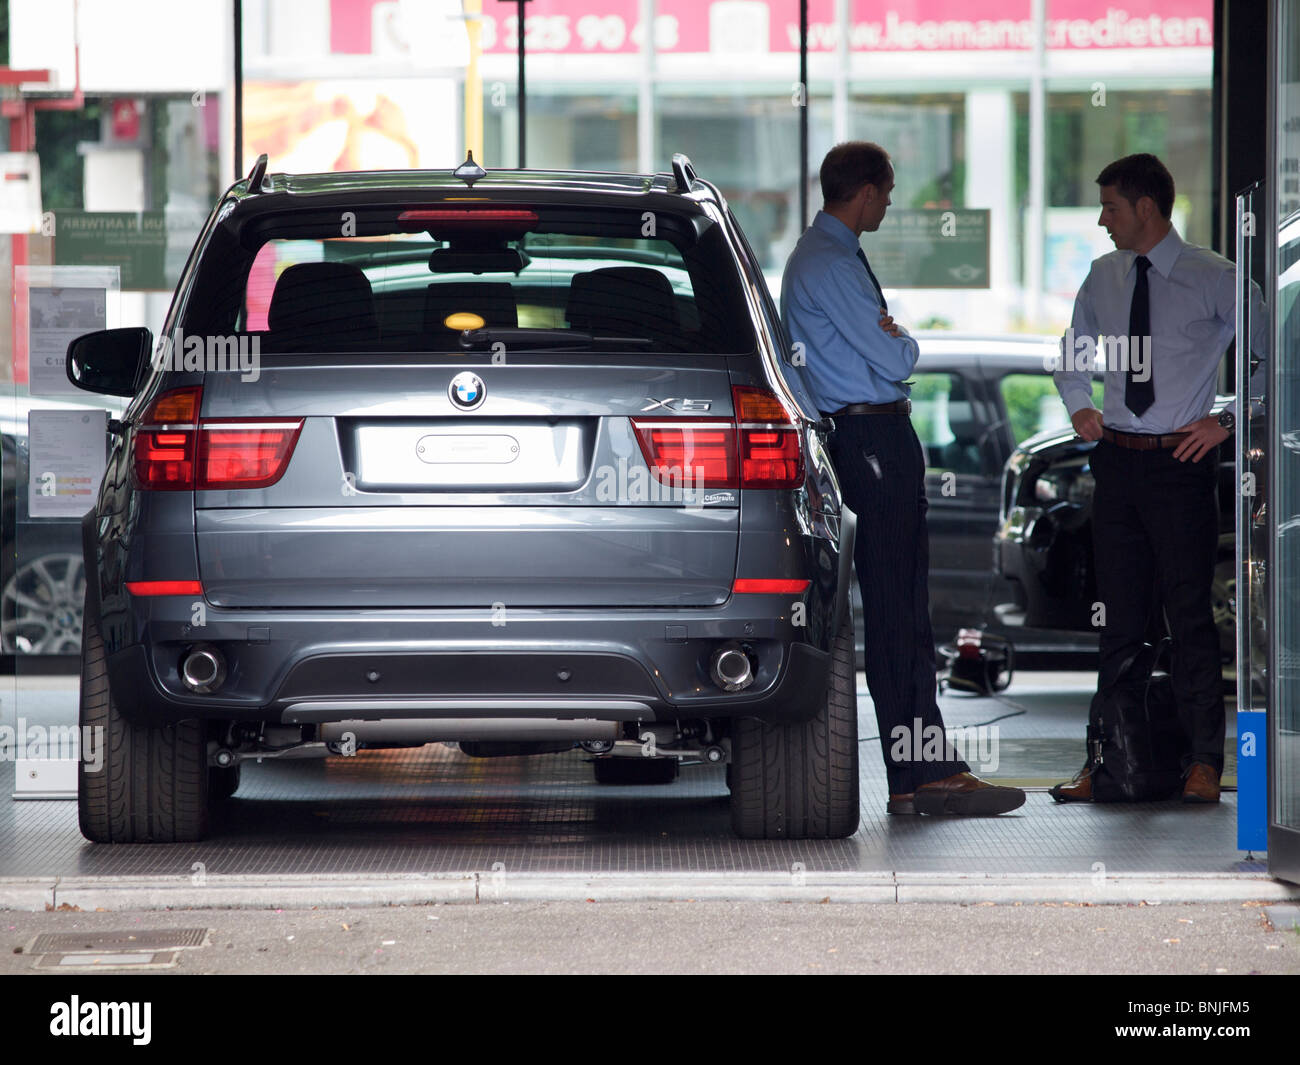 New BMW X5 in car dealer showroom with 2 people talking Antwerp Belgium Stock Photo